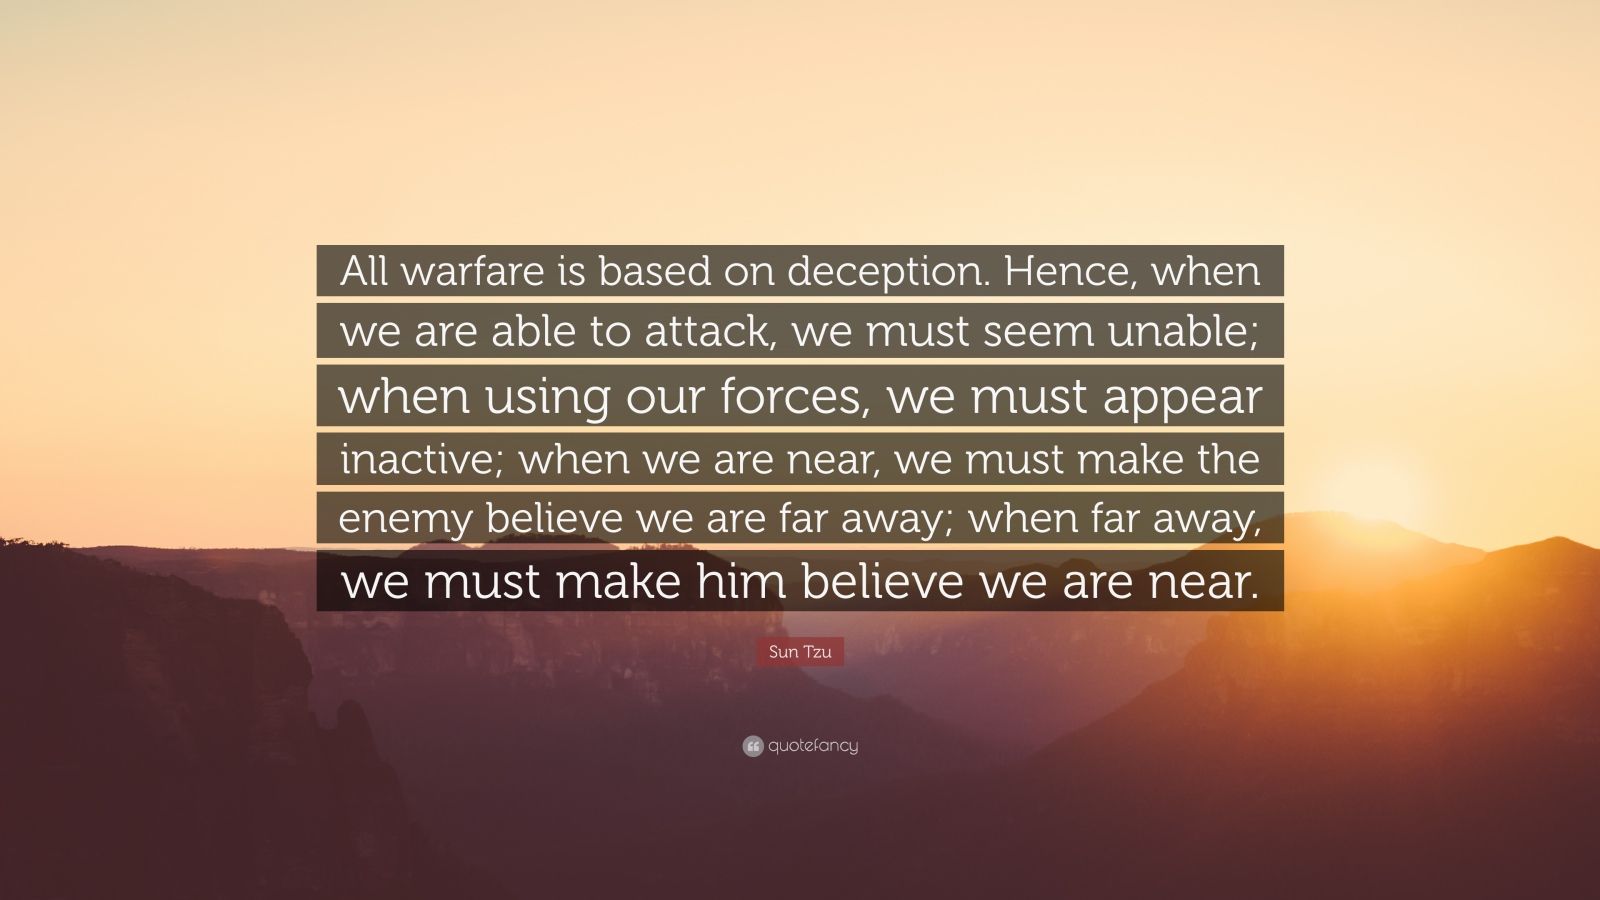 Sun Tzu Quotes (33 wallpapers) - Quotefancy